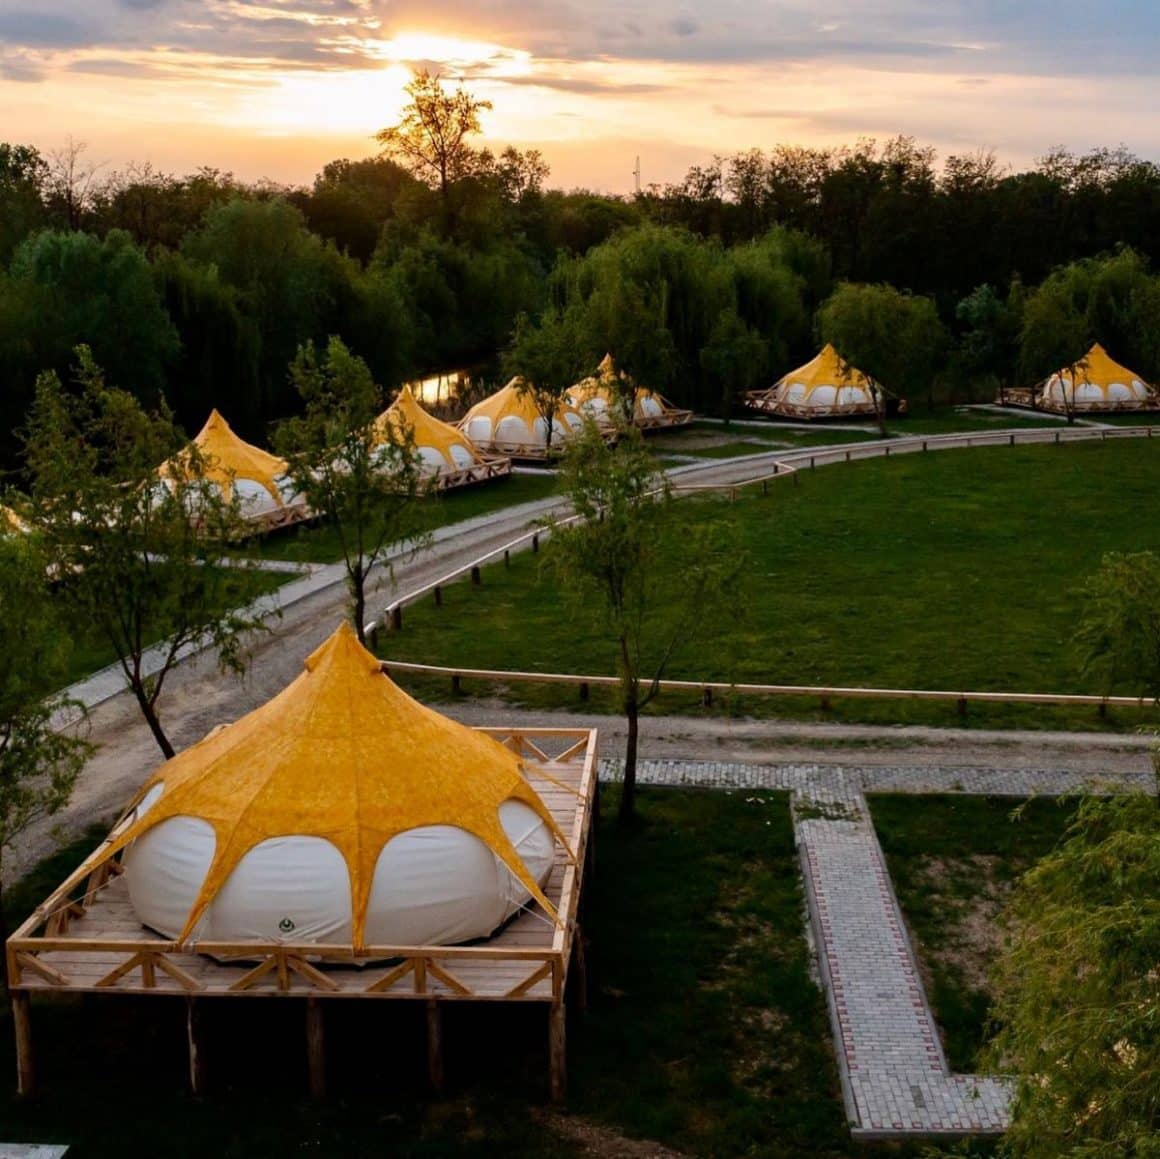 compelx de glamping în România la a Zaga Zaga Sat, cu corturi de lux cu acoperis galben